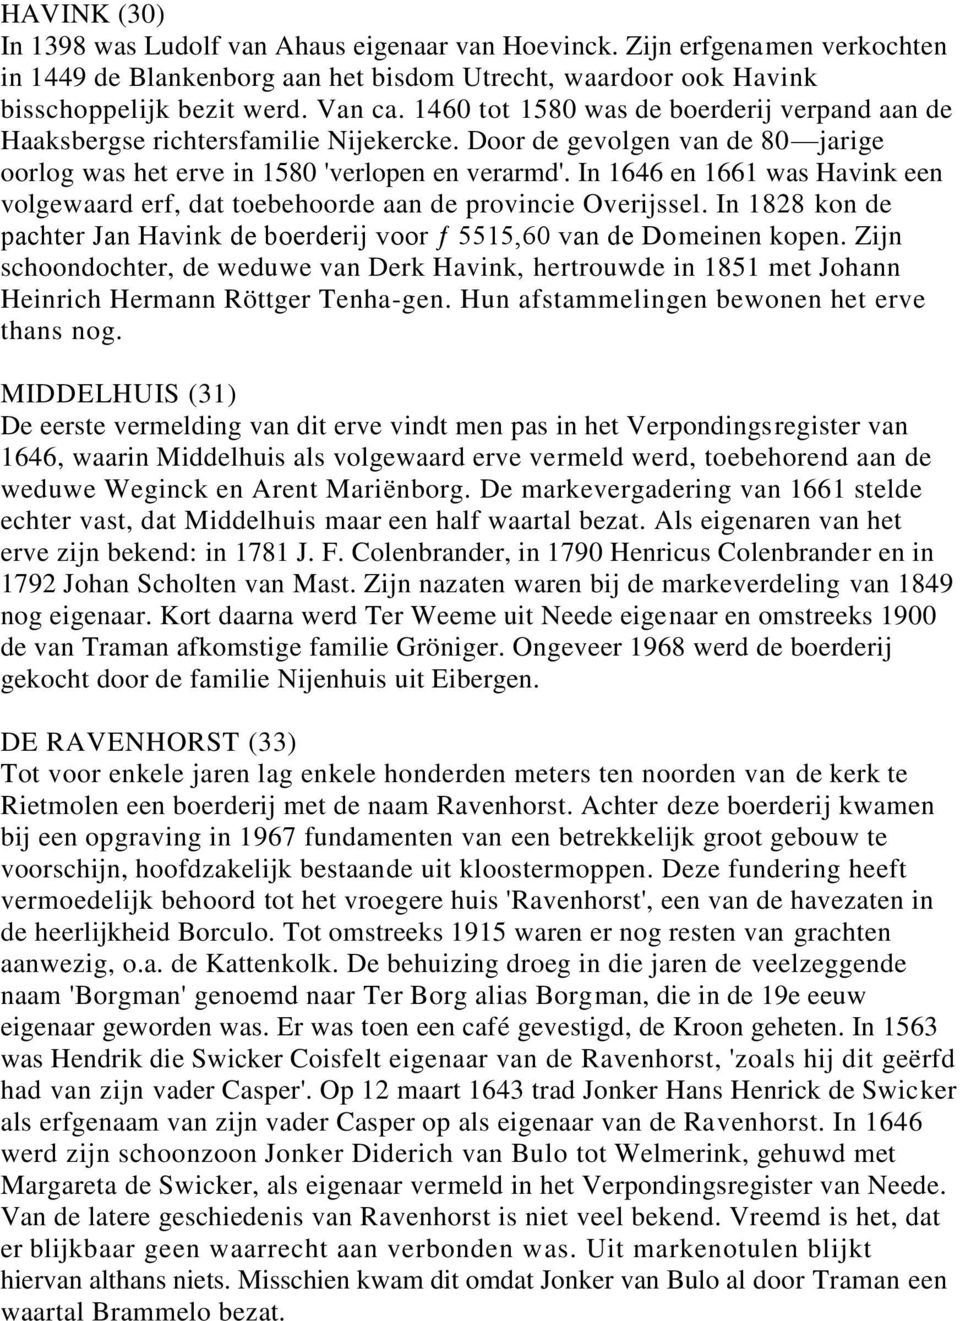 In 1646 en 1661 was Havink een volgewaard erf, dat toebehoorde aan de provincie Overijssel. In 1828 kon de pachter Jan Havink de boerderij voor ƒ 5515,60 van de Domeinen kopen.